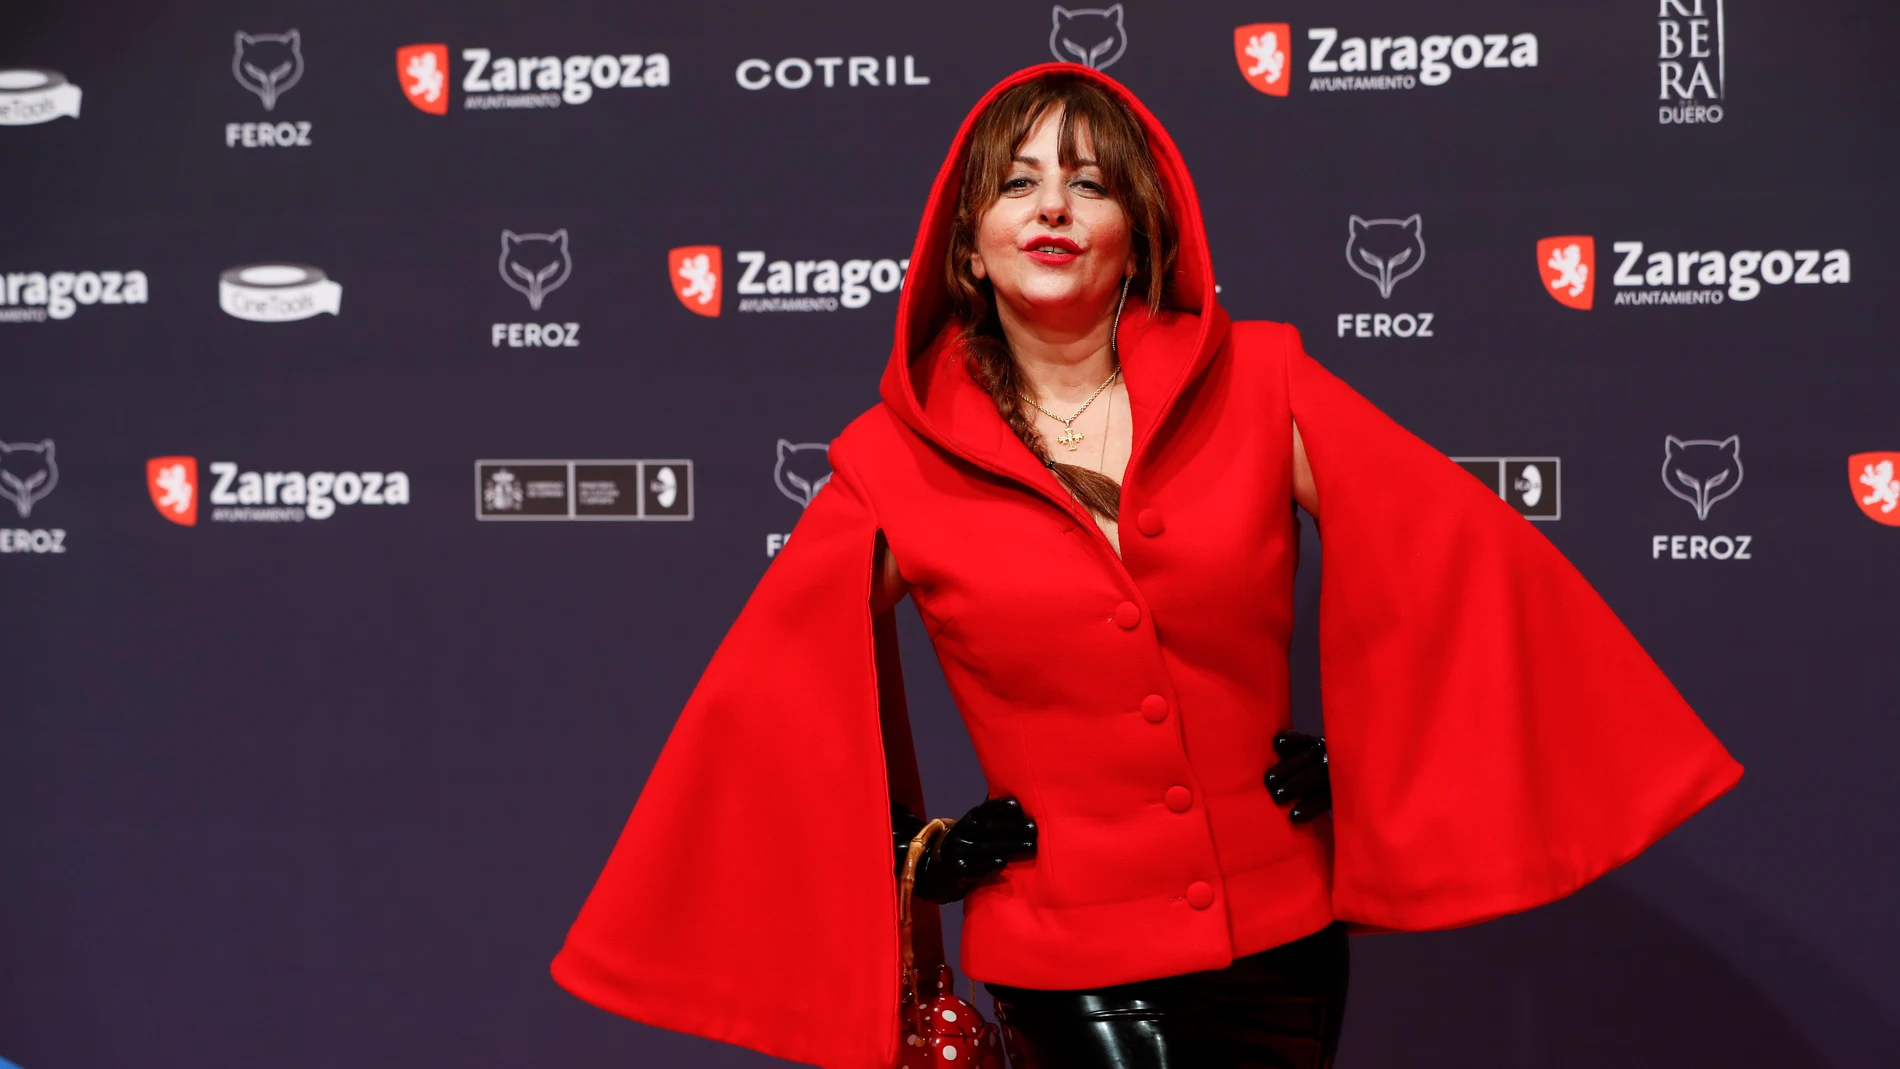 Yolanda Ramos de Caperucita Roja en la alfombra roja de los Premios Feroz 2022.